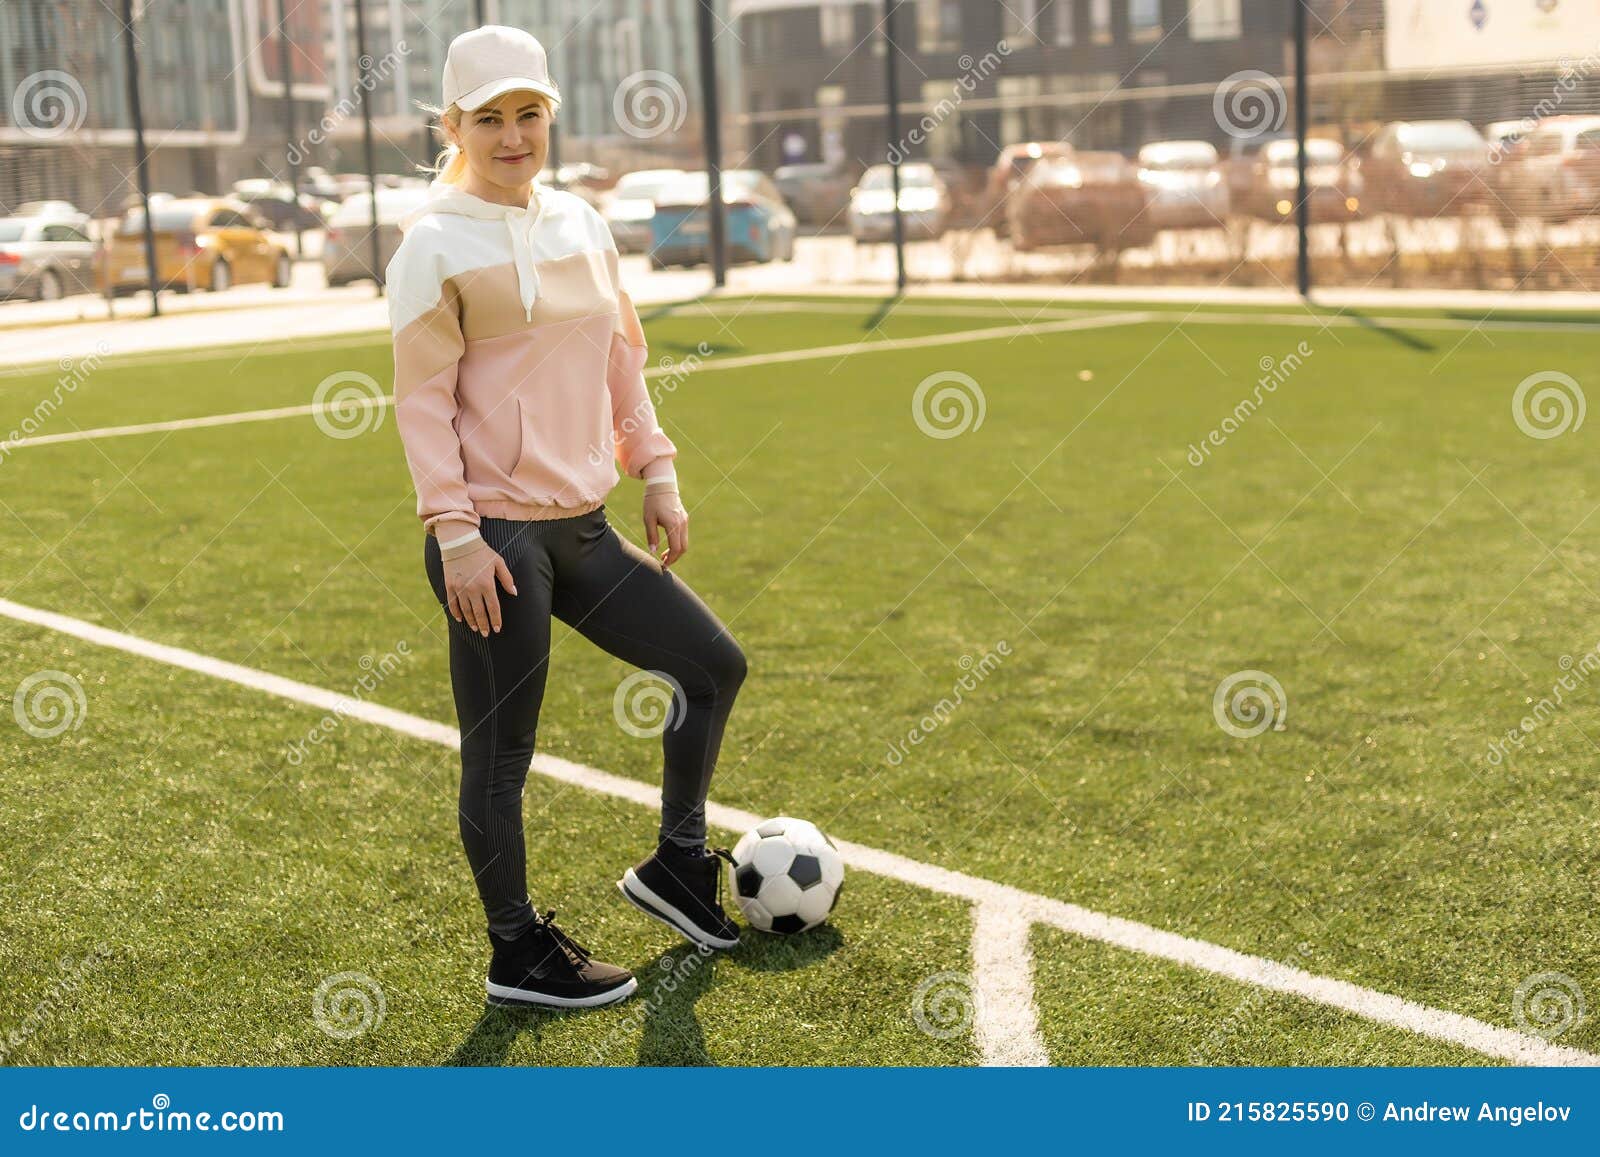 Fútbol Femenino Bonito. Joven Con Ropa Con Un Balón De Fútbol En El Césped Foto de archivo - Imagen de retrato: 215825590